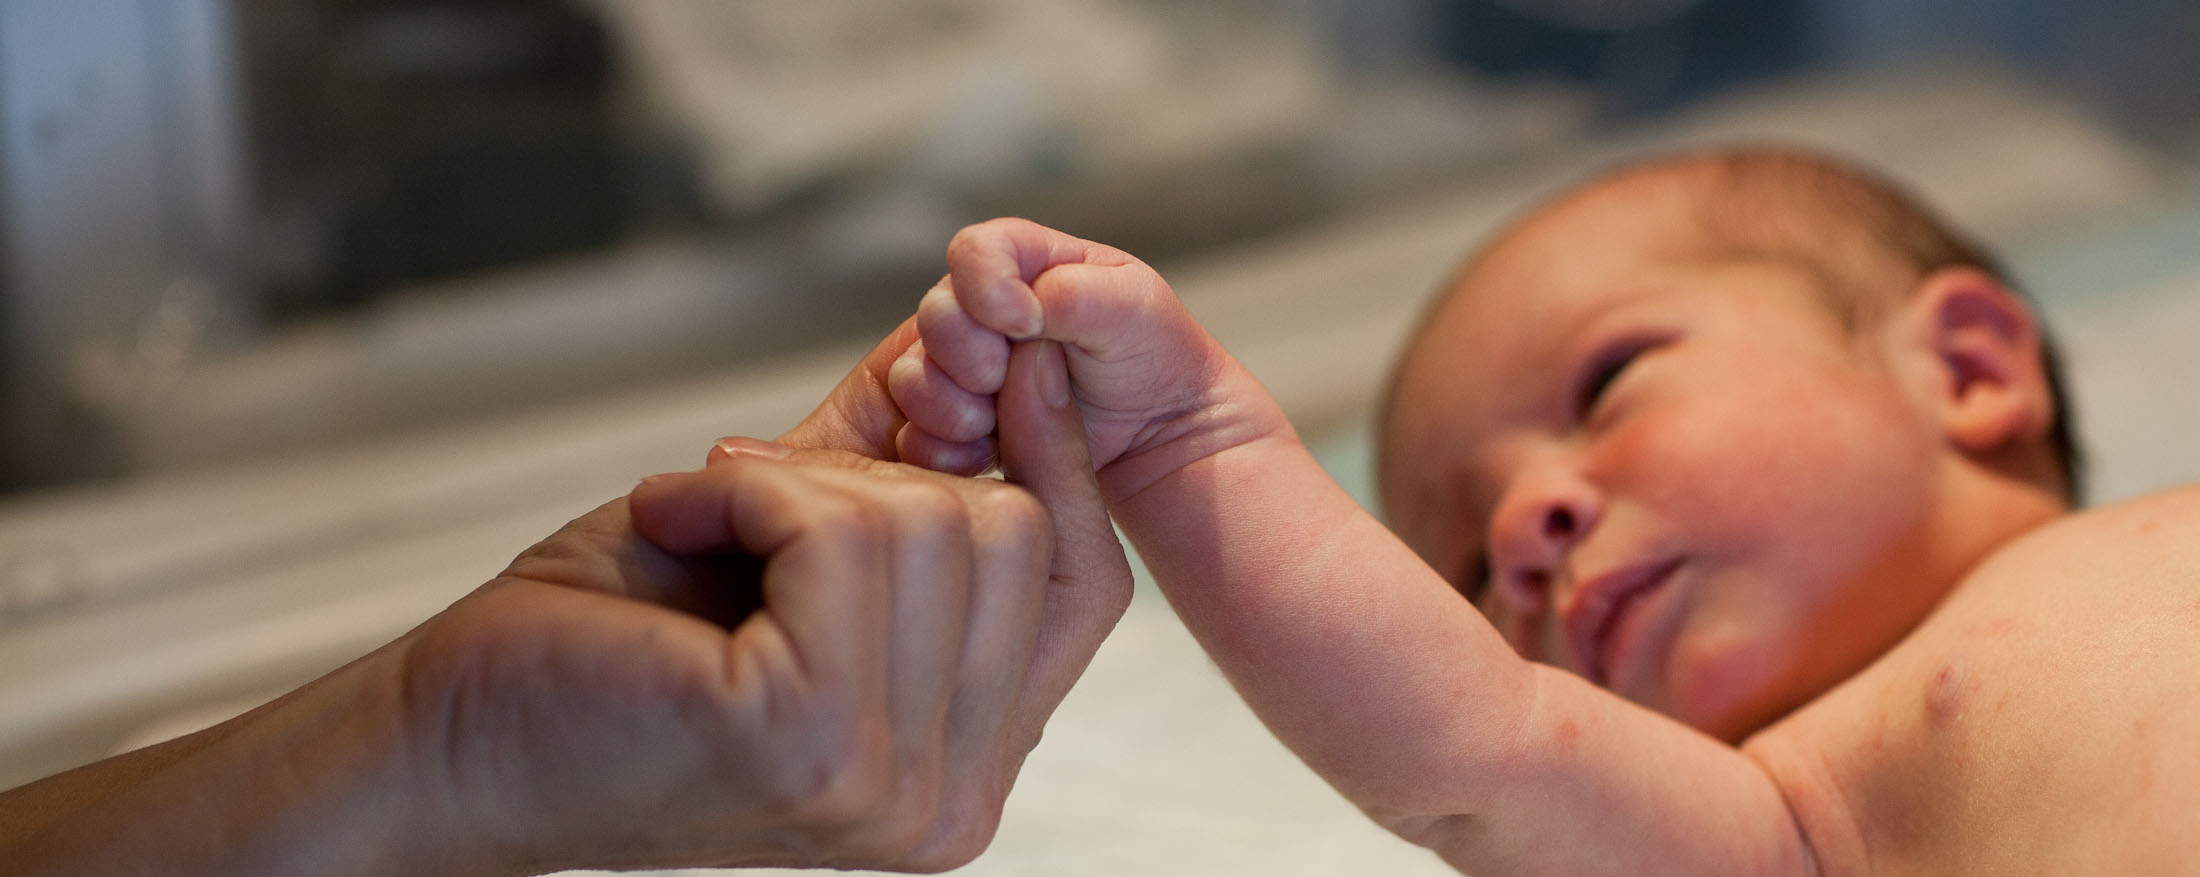 Ein Erwachsener hält sanft die Hand eines Neugeborenen